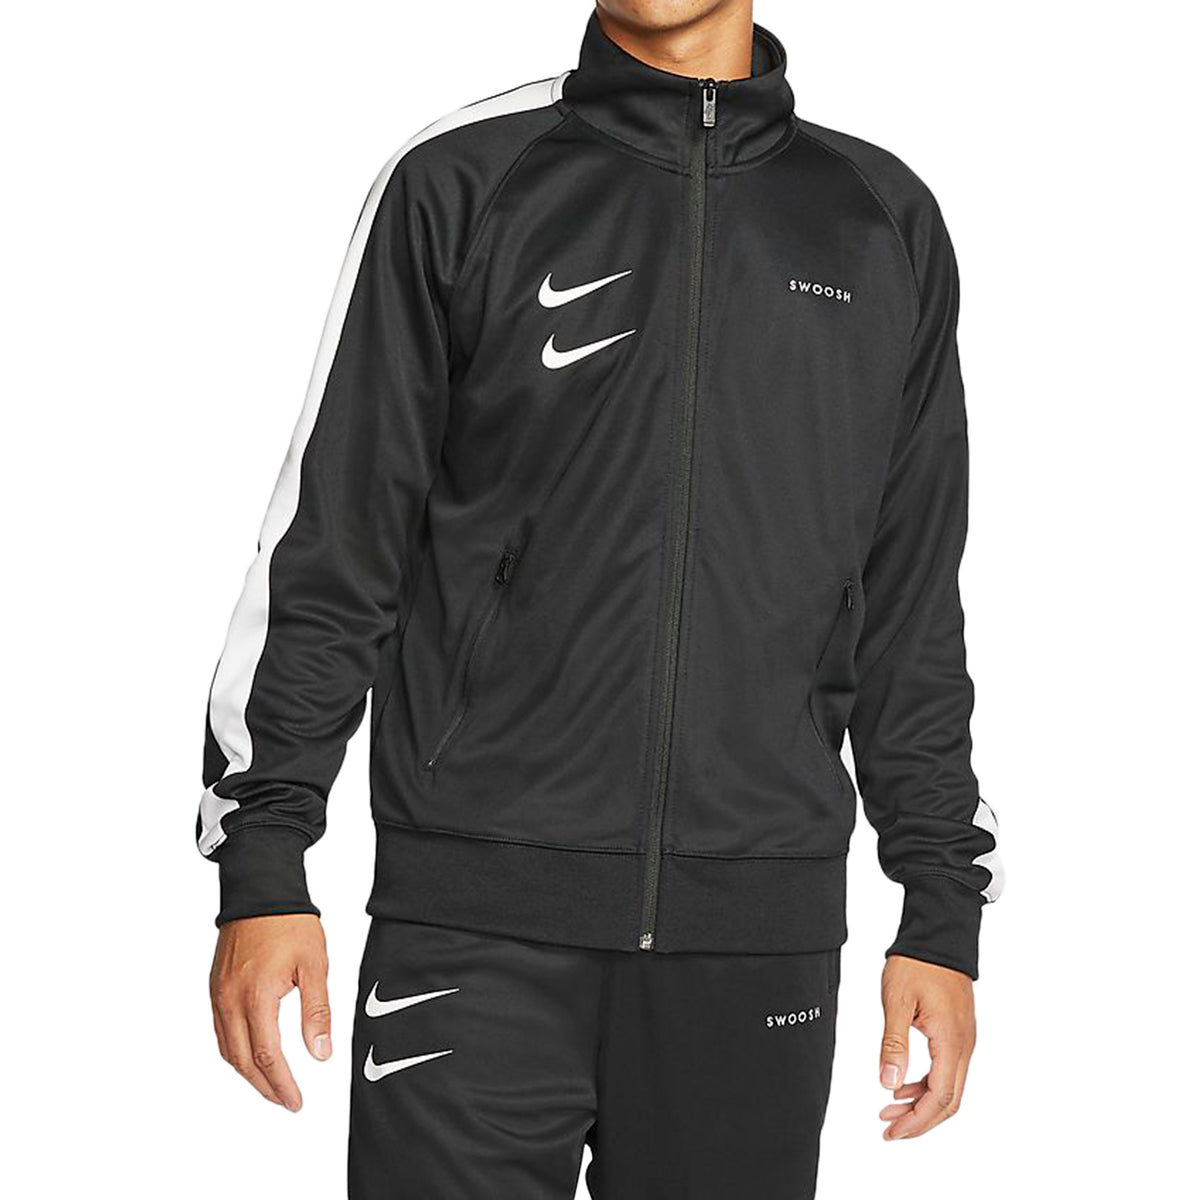 Nike Sportswear Swoosh Jacket Mens Style : Cj4884